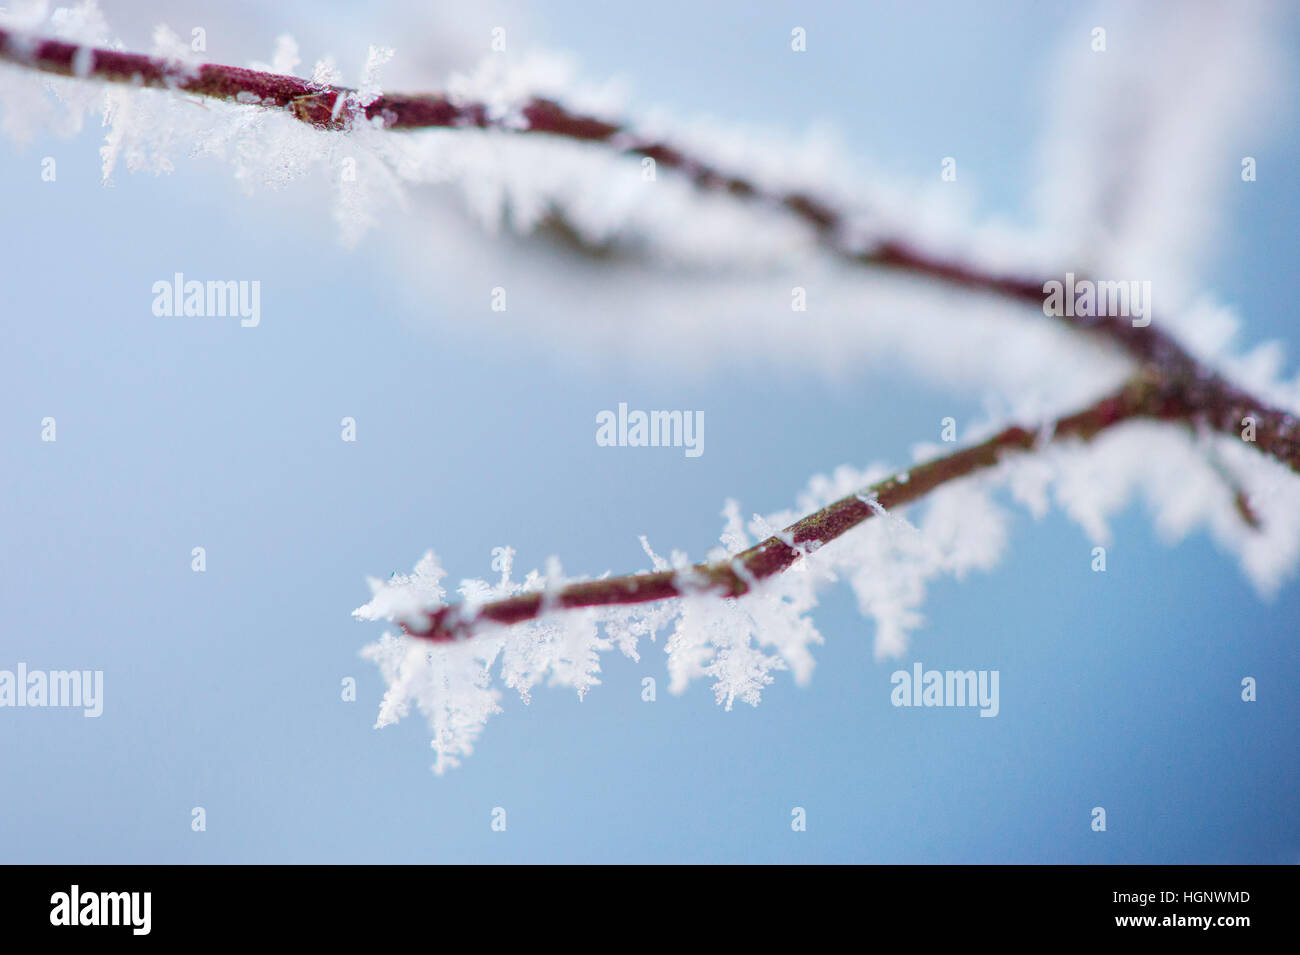 Frost bedeckt Zweig in den kalten Wintermonaten. Stockfoto